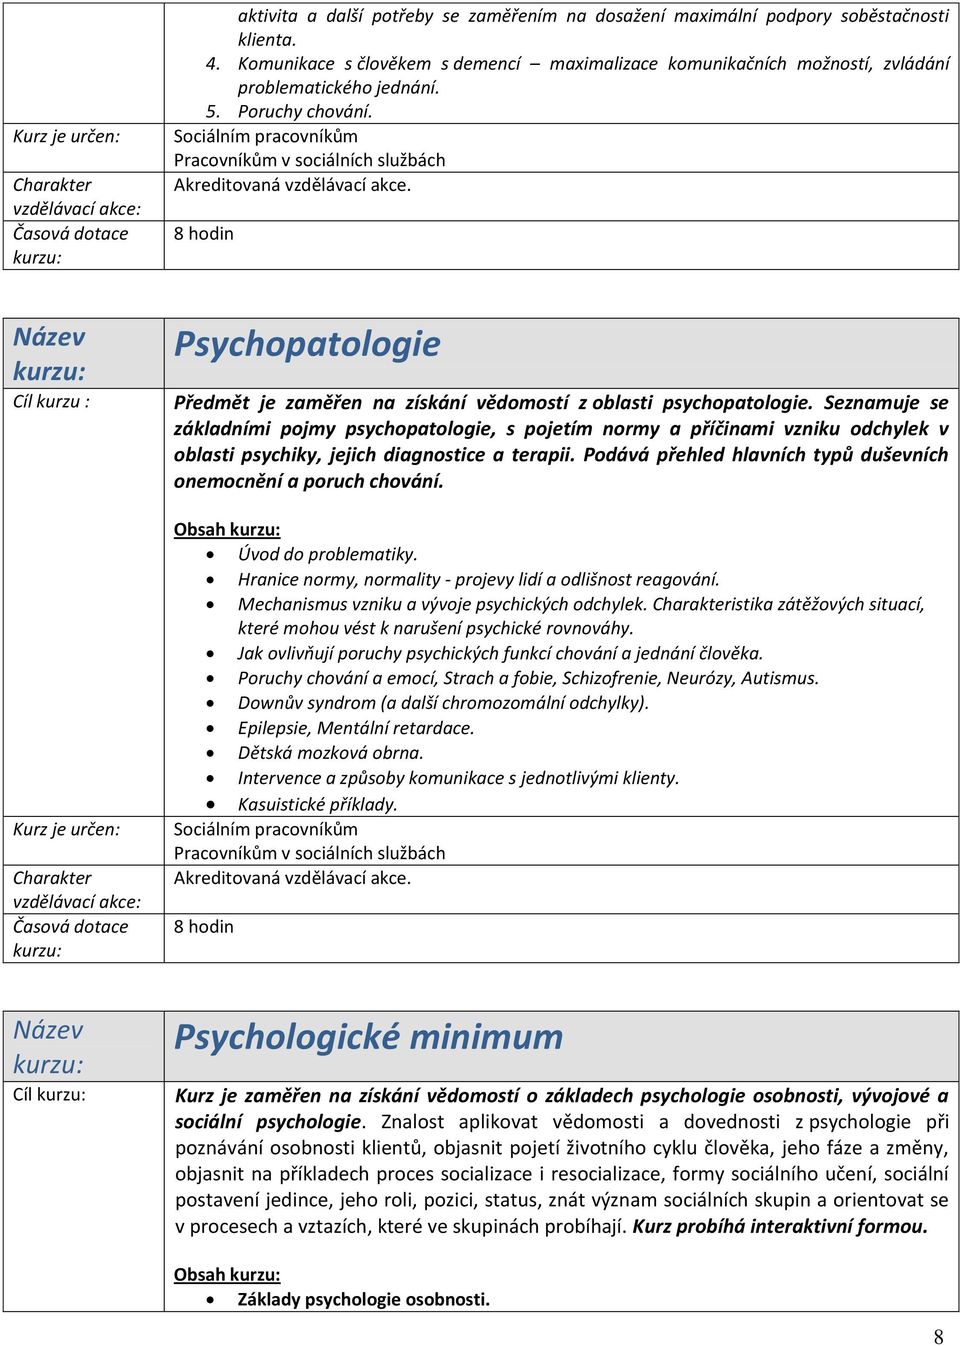 Seznamuje se základními pojmy psychopatologie, s pojetím normy a příčinami vzniku odchylek v oblasti psychiky, jejich diagnostice a terapii.